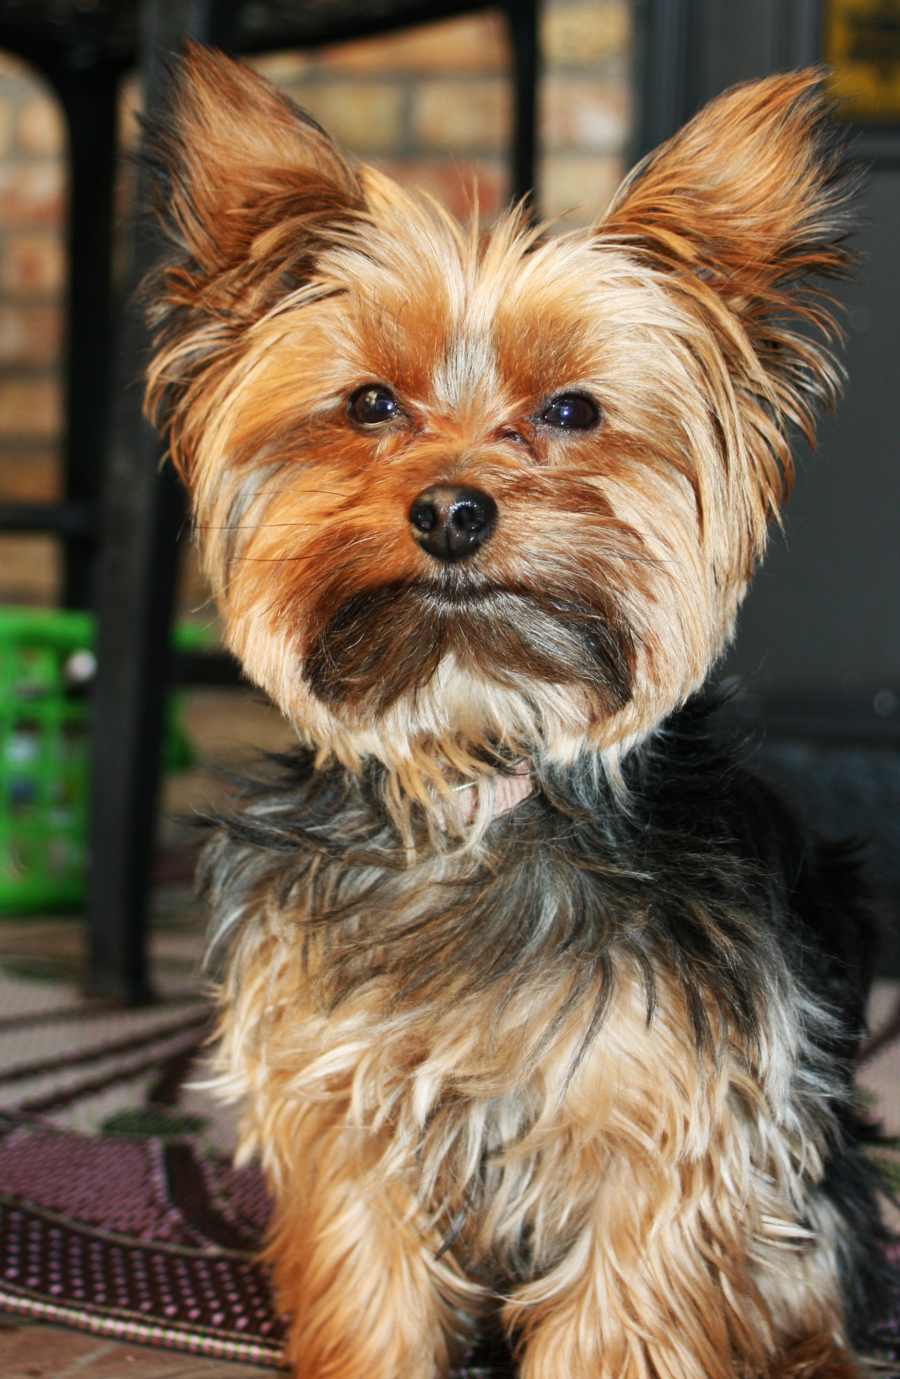 Miniature Yorkshire Terrier: October 2012